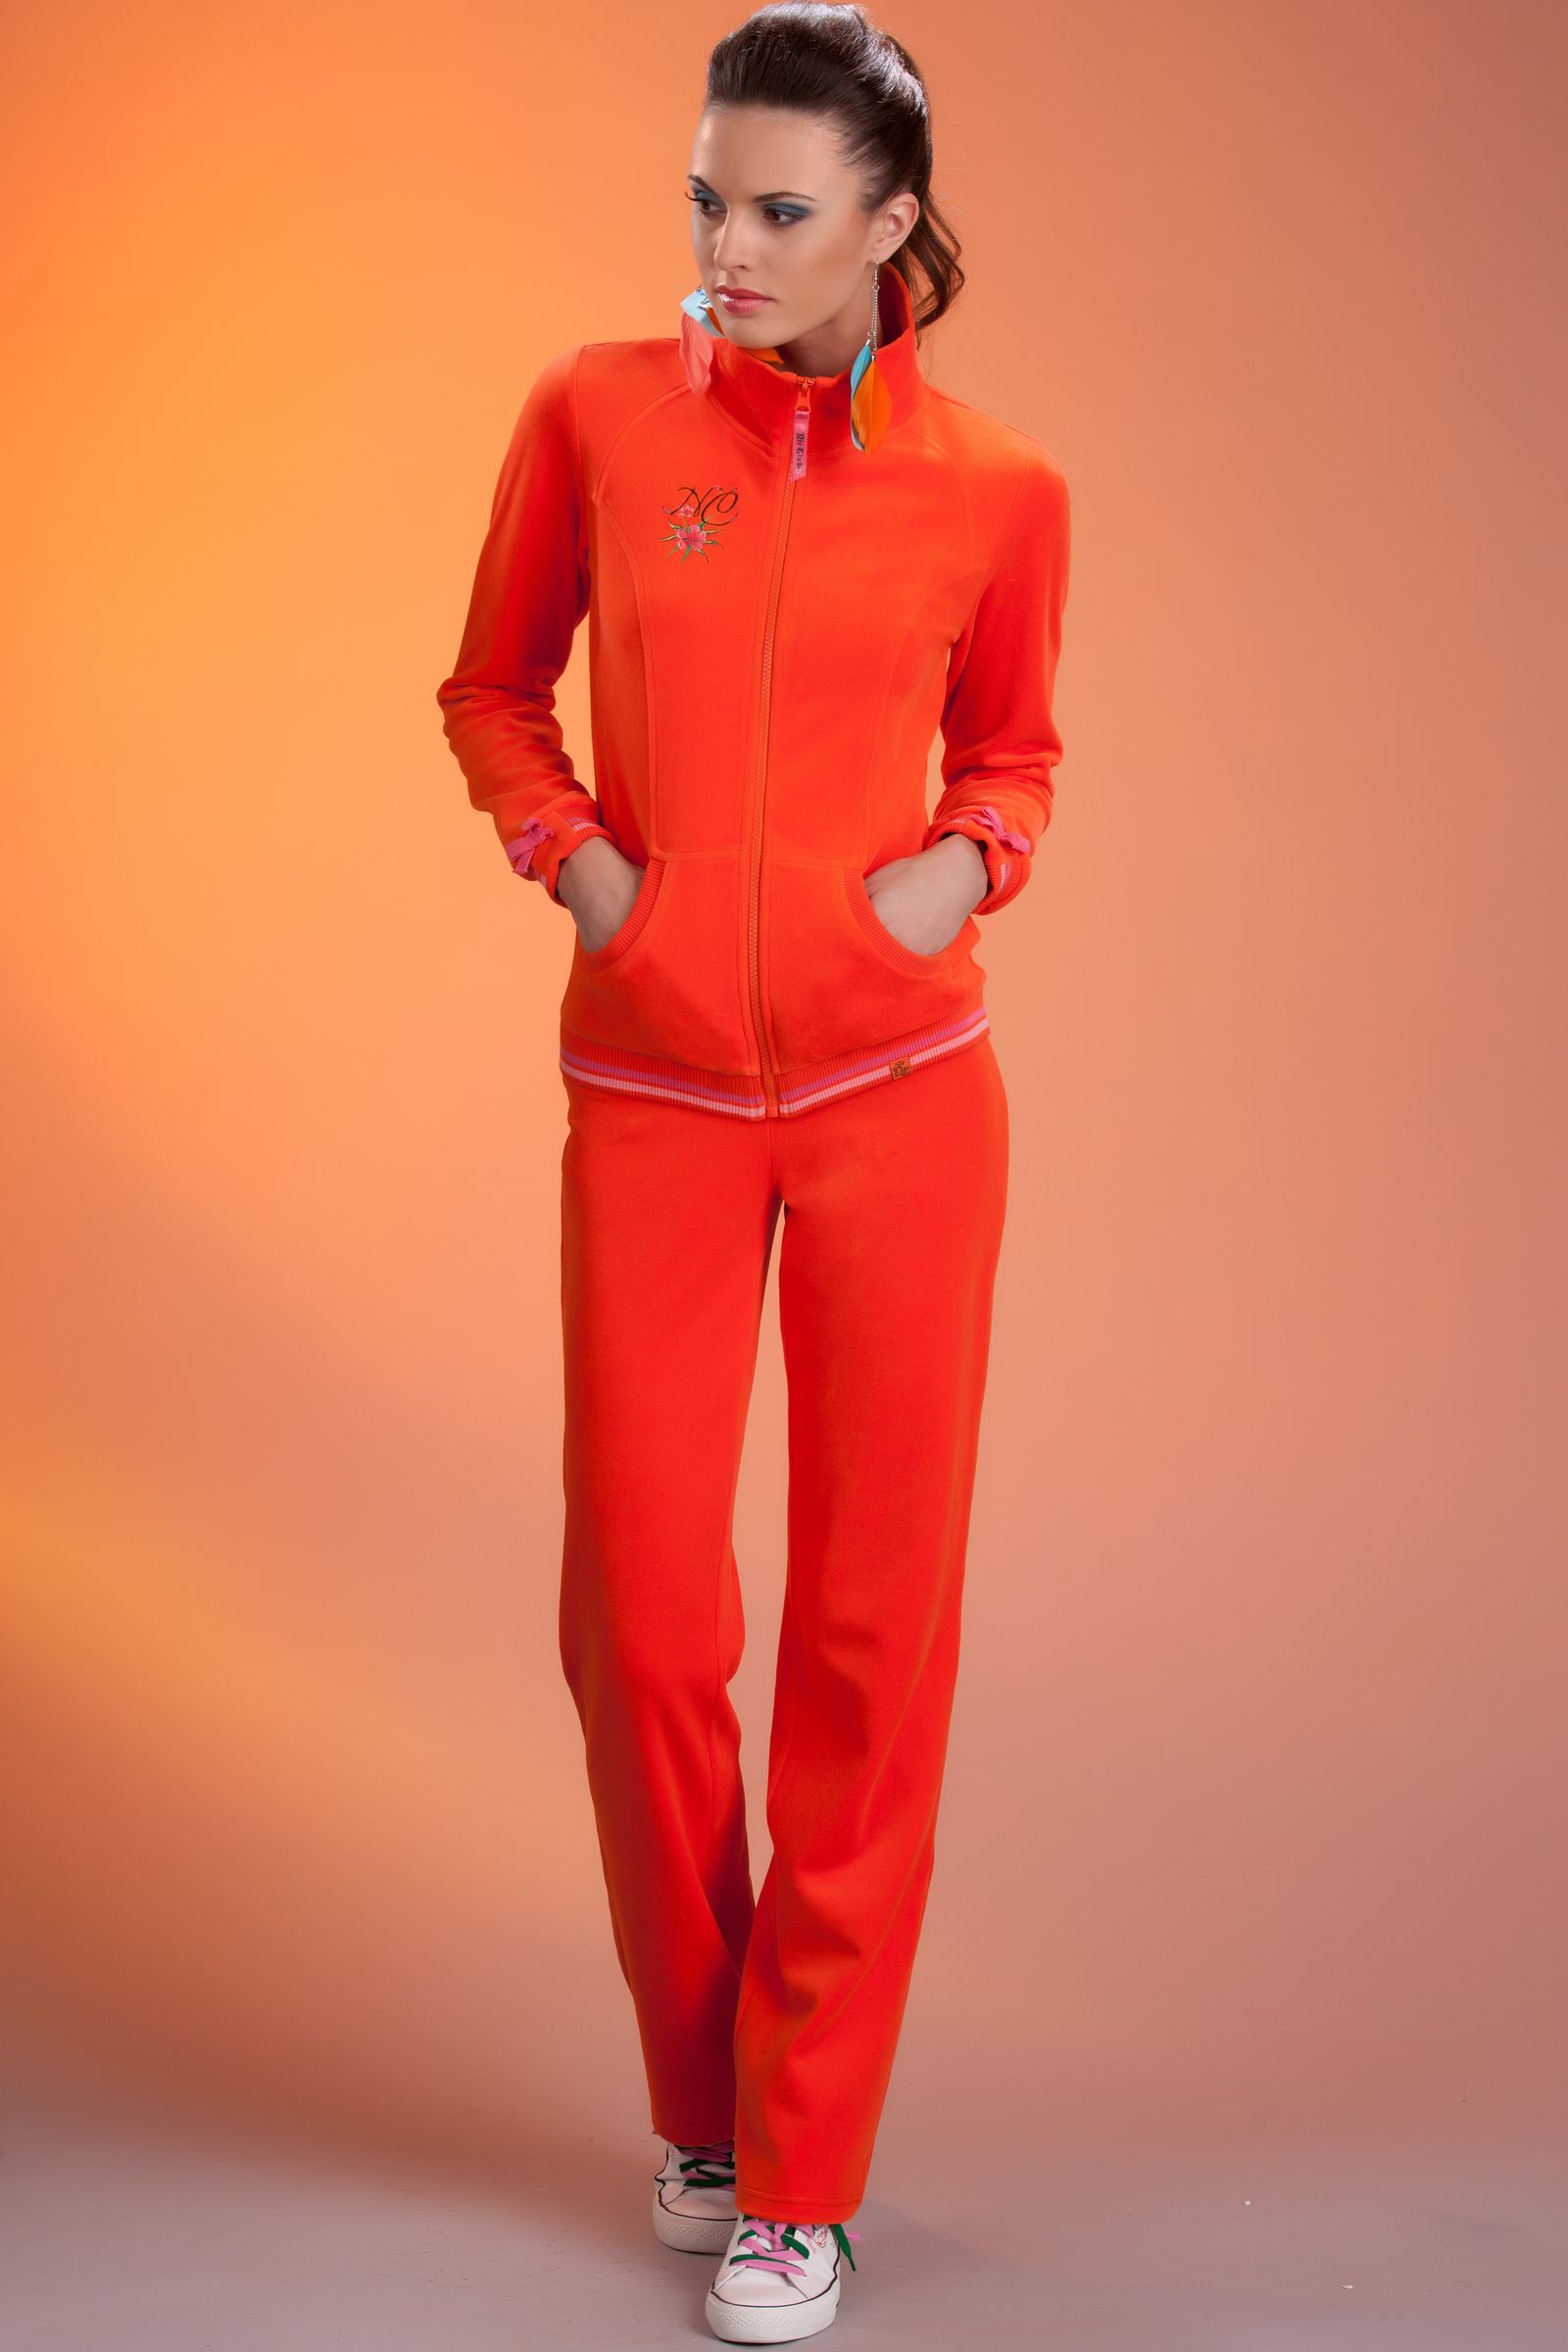 Домашний спортивный костюм. Nic Club велюровый костюм flamingo1302. Оранжевый спортивный костюм женский. Велюровый спортивный костюм женский. Спортивный костюм женский оранжевого цвета.